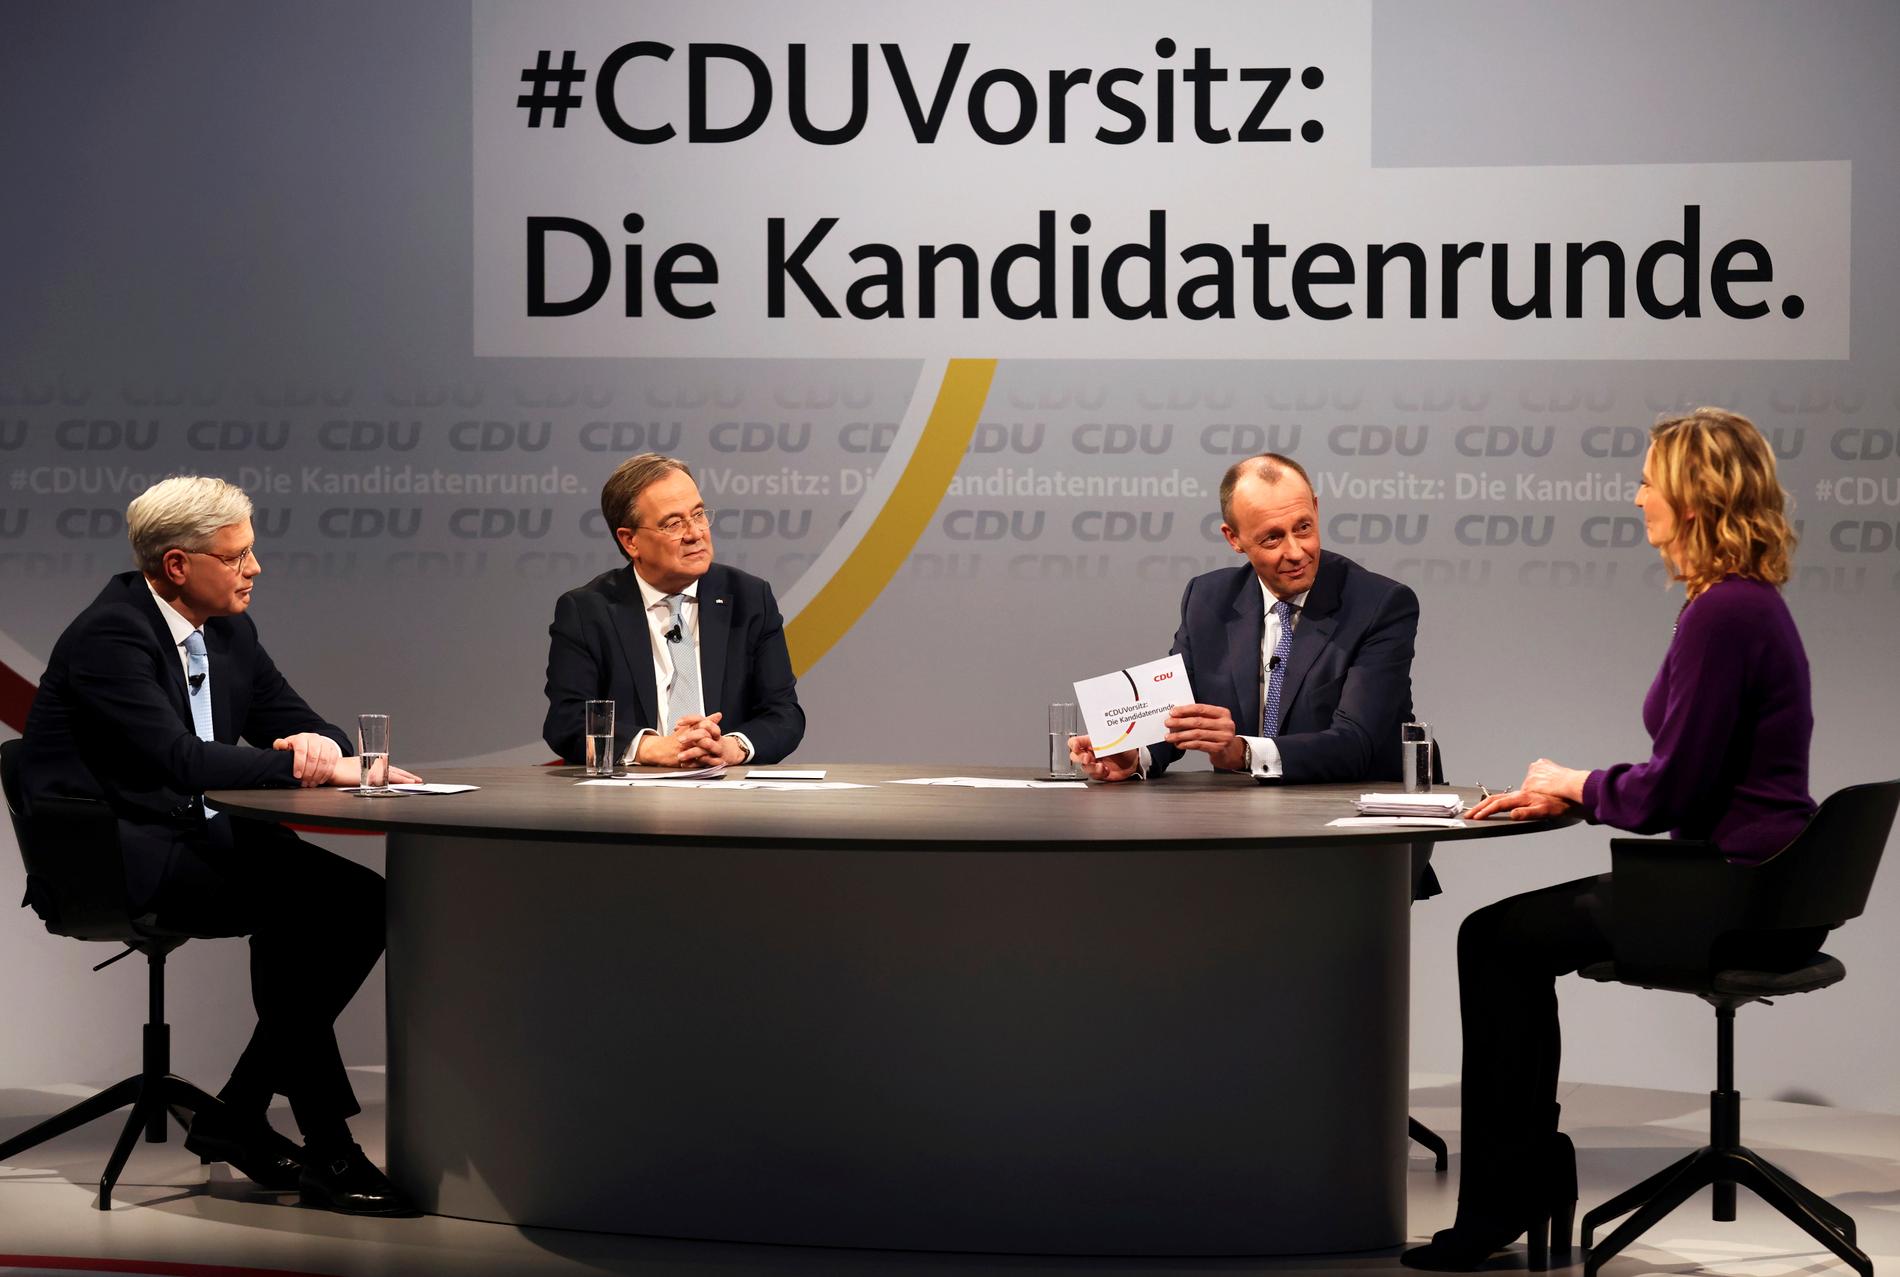 De tre kandidaterna som vill ta över ledarposten i CDU: Norbert Röttgen (t v), Armin Laschet (mitten) och Friedrich Merz (t h).